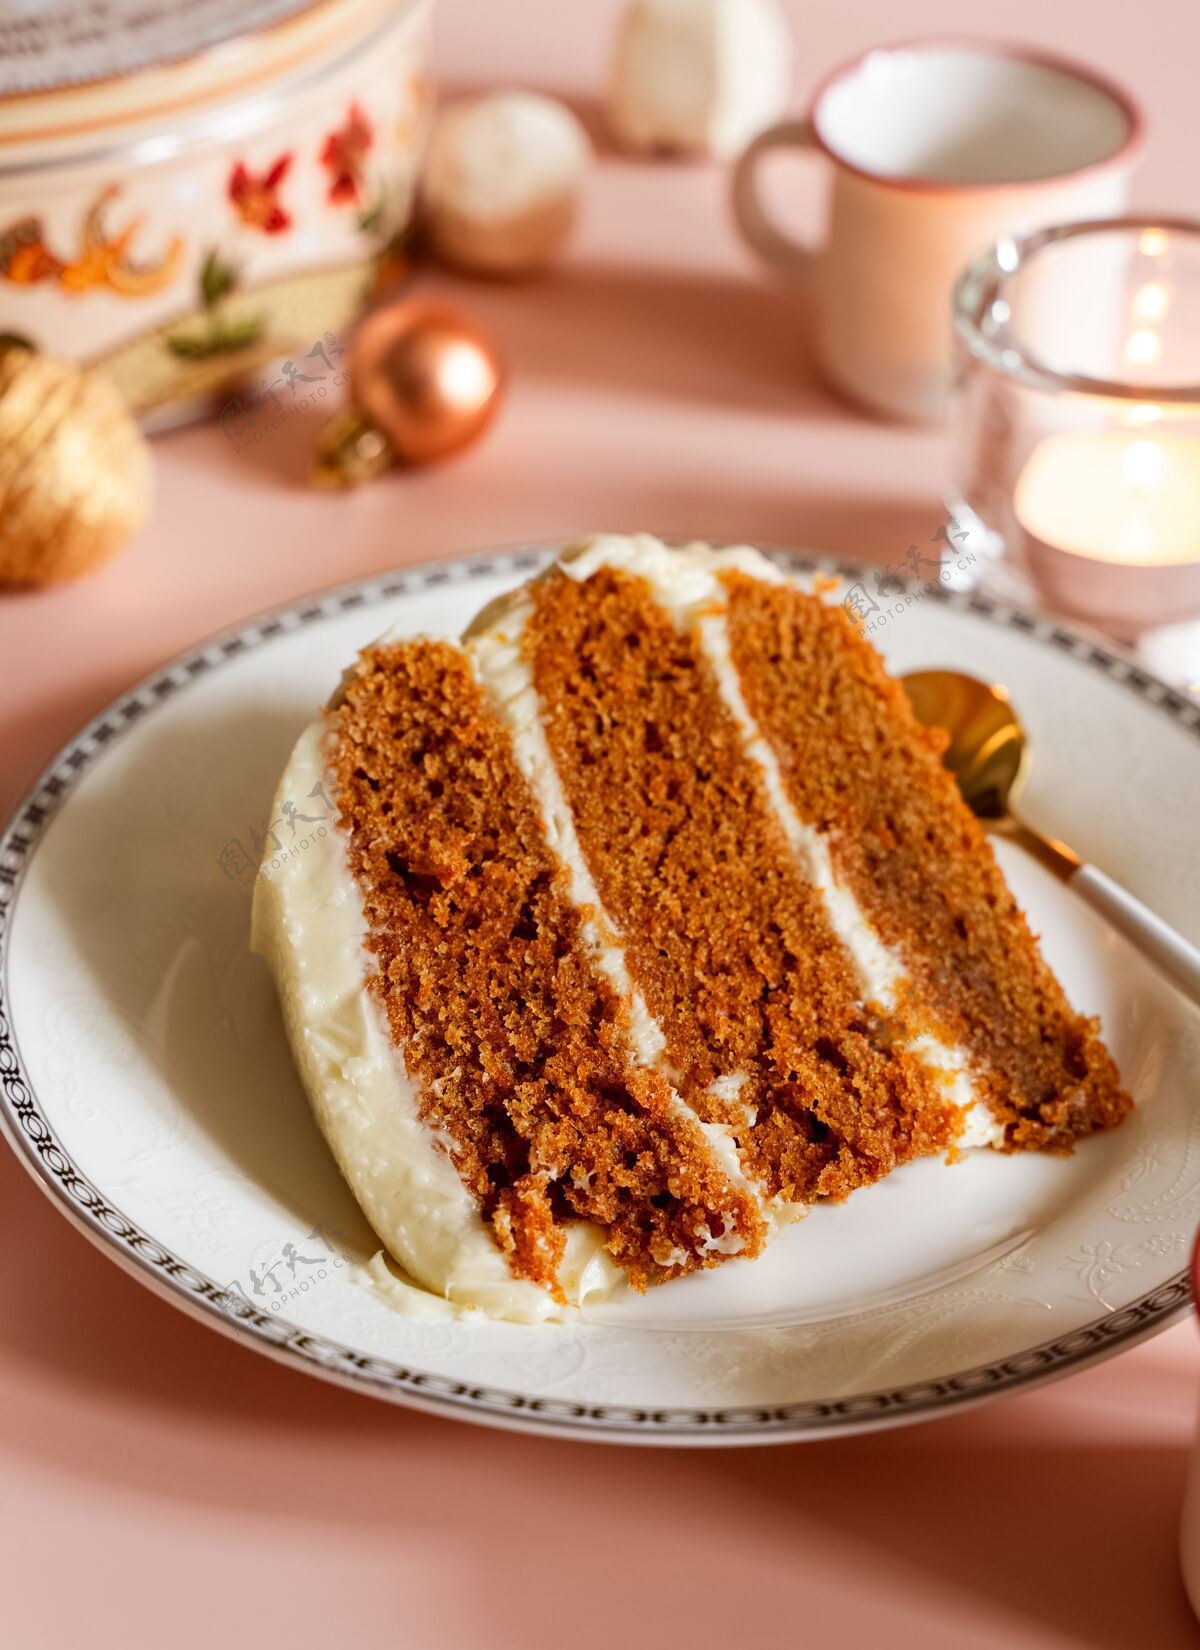 节日在白色盘子上放一块胡萝卜层蛋糕 有圣诞节的季节性背景前景美味膳食